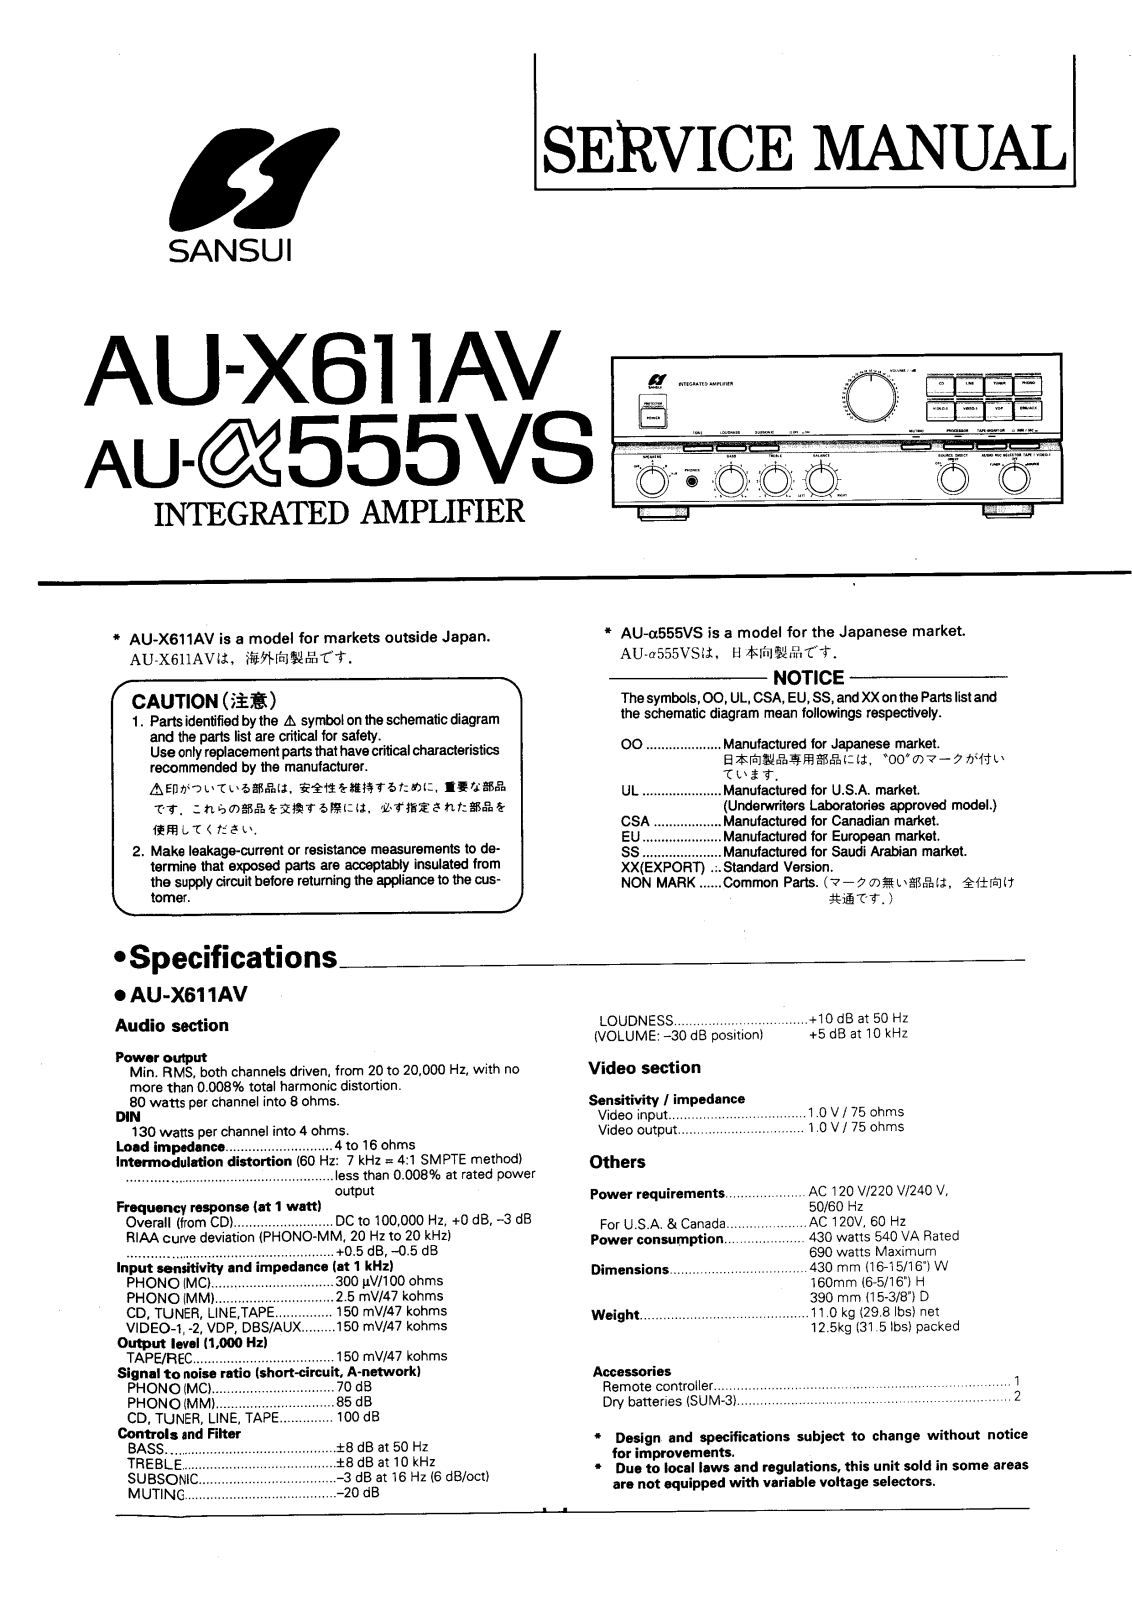 Sansui AU-X611-AV, AU-a555-VS Service Manual